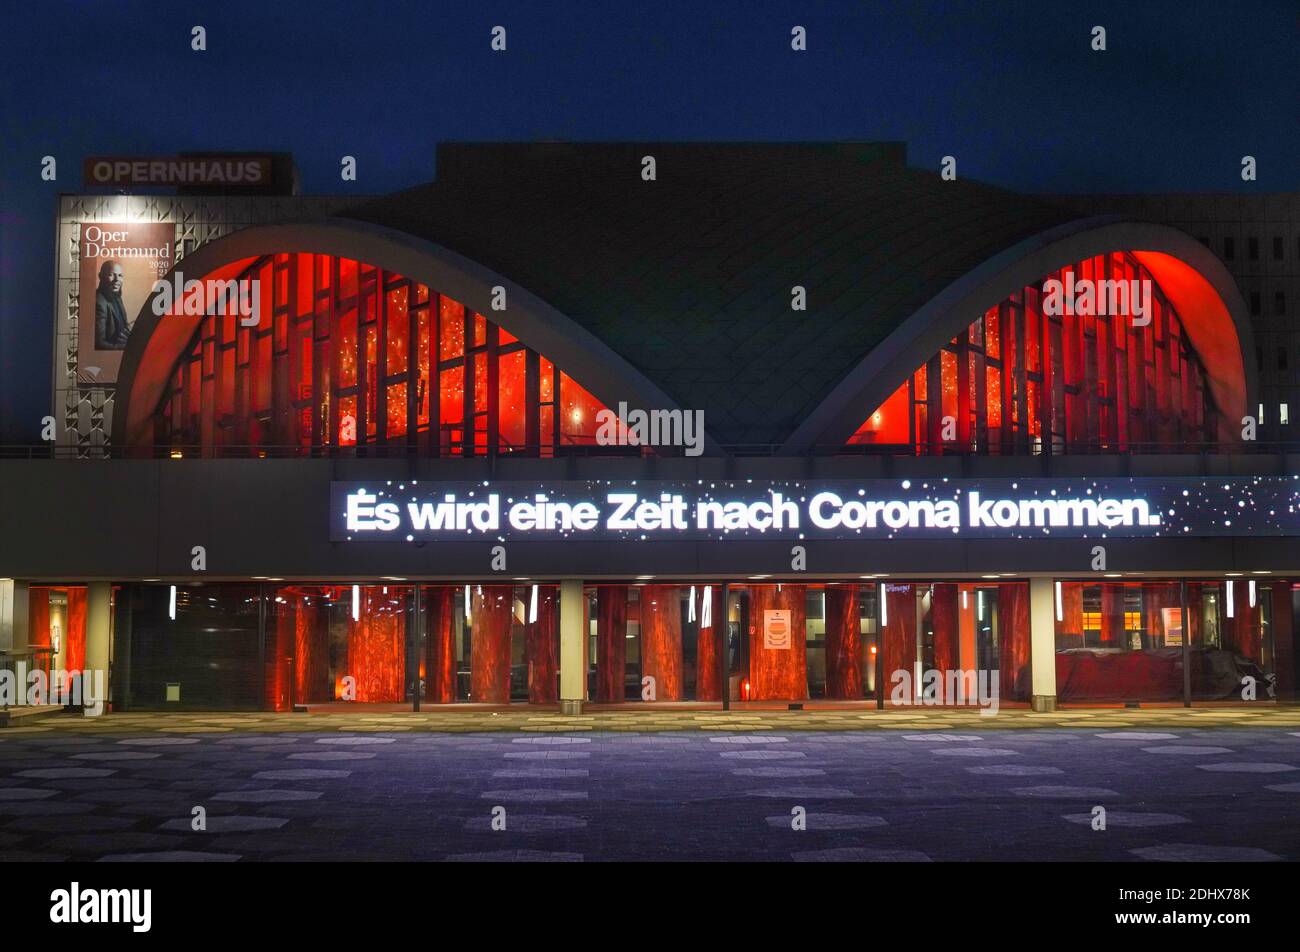 Dortmund, Germania, 11 dicembre 2020: Il Teatro Dortmund, chiuso a causa della crisi della corona, si illumina in rosso. Il testo CHE CI VERRÀ UN TEMPO DOPO CORONA si riferisce alla prenotazione anticipata per la stagione 2021 Foto Stock